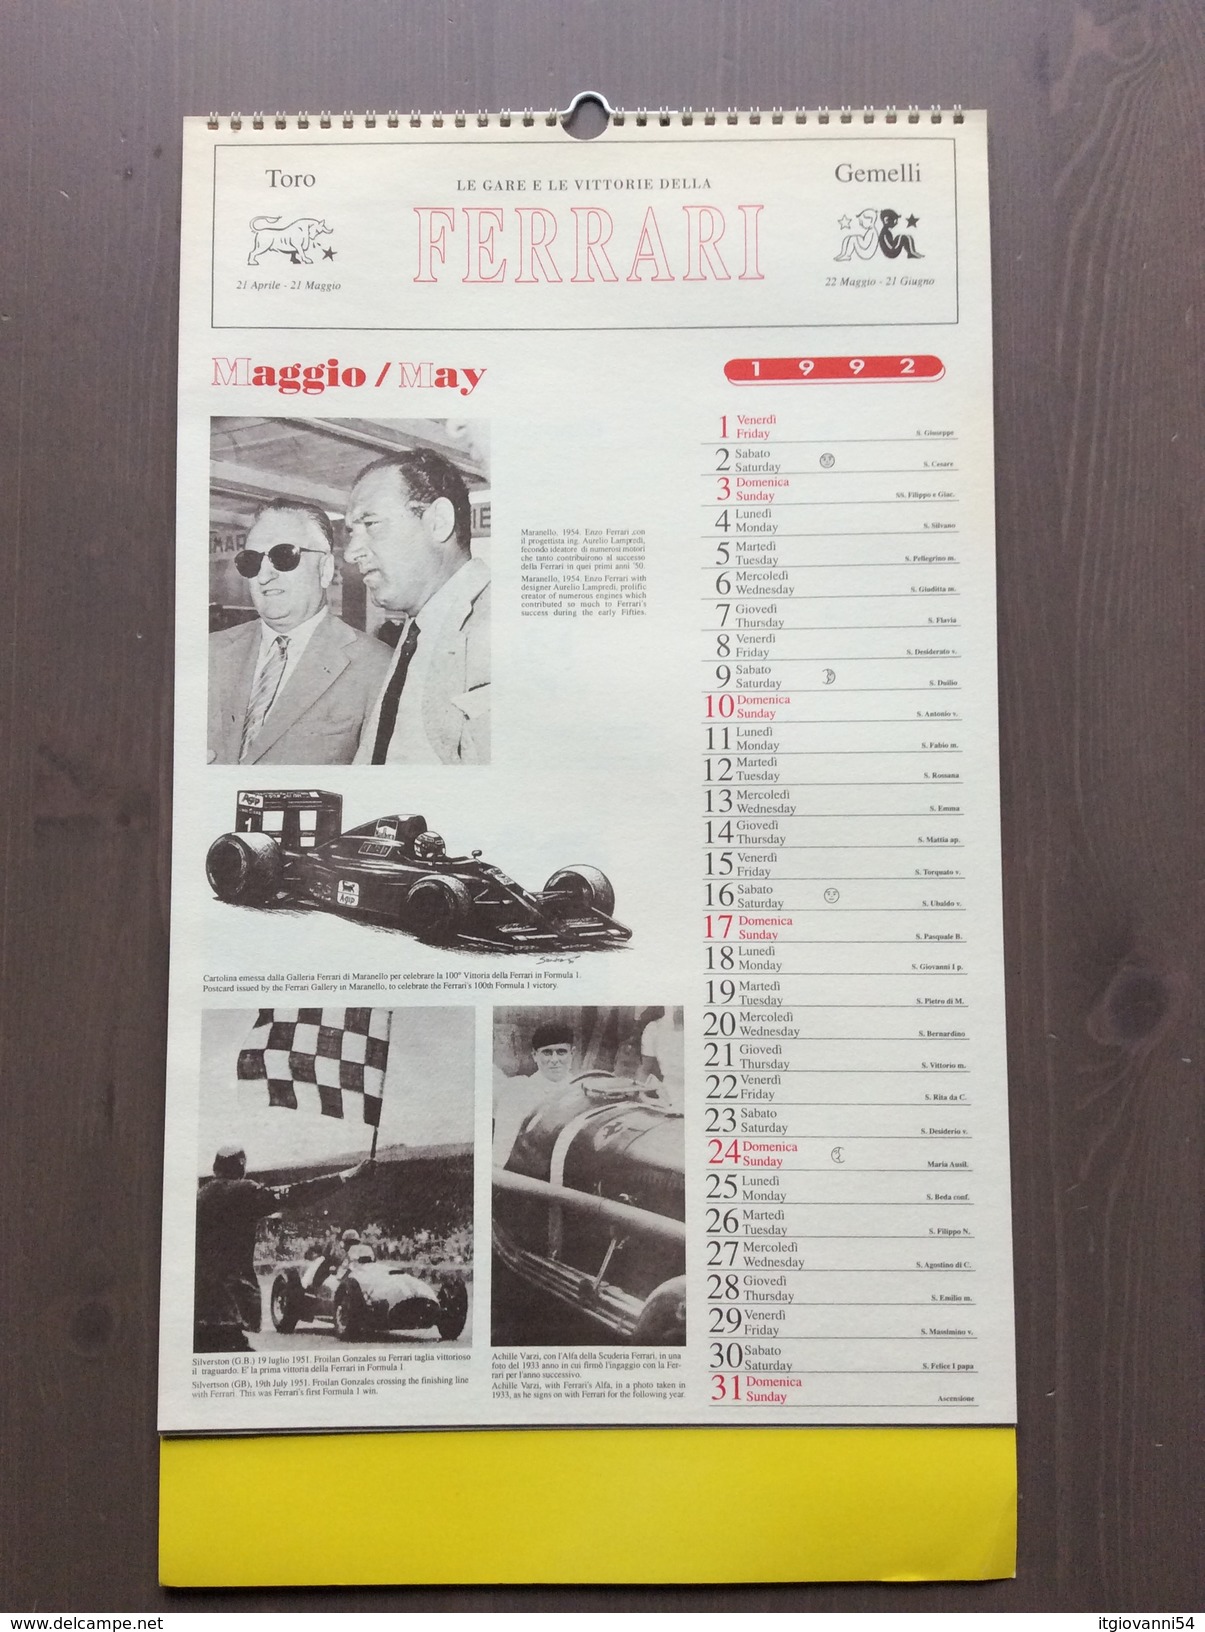 Calendario da collezione Ferrari 1992 con custodia esterna